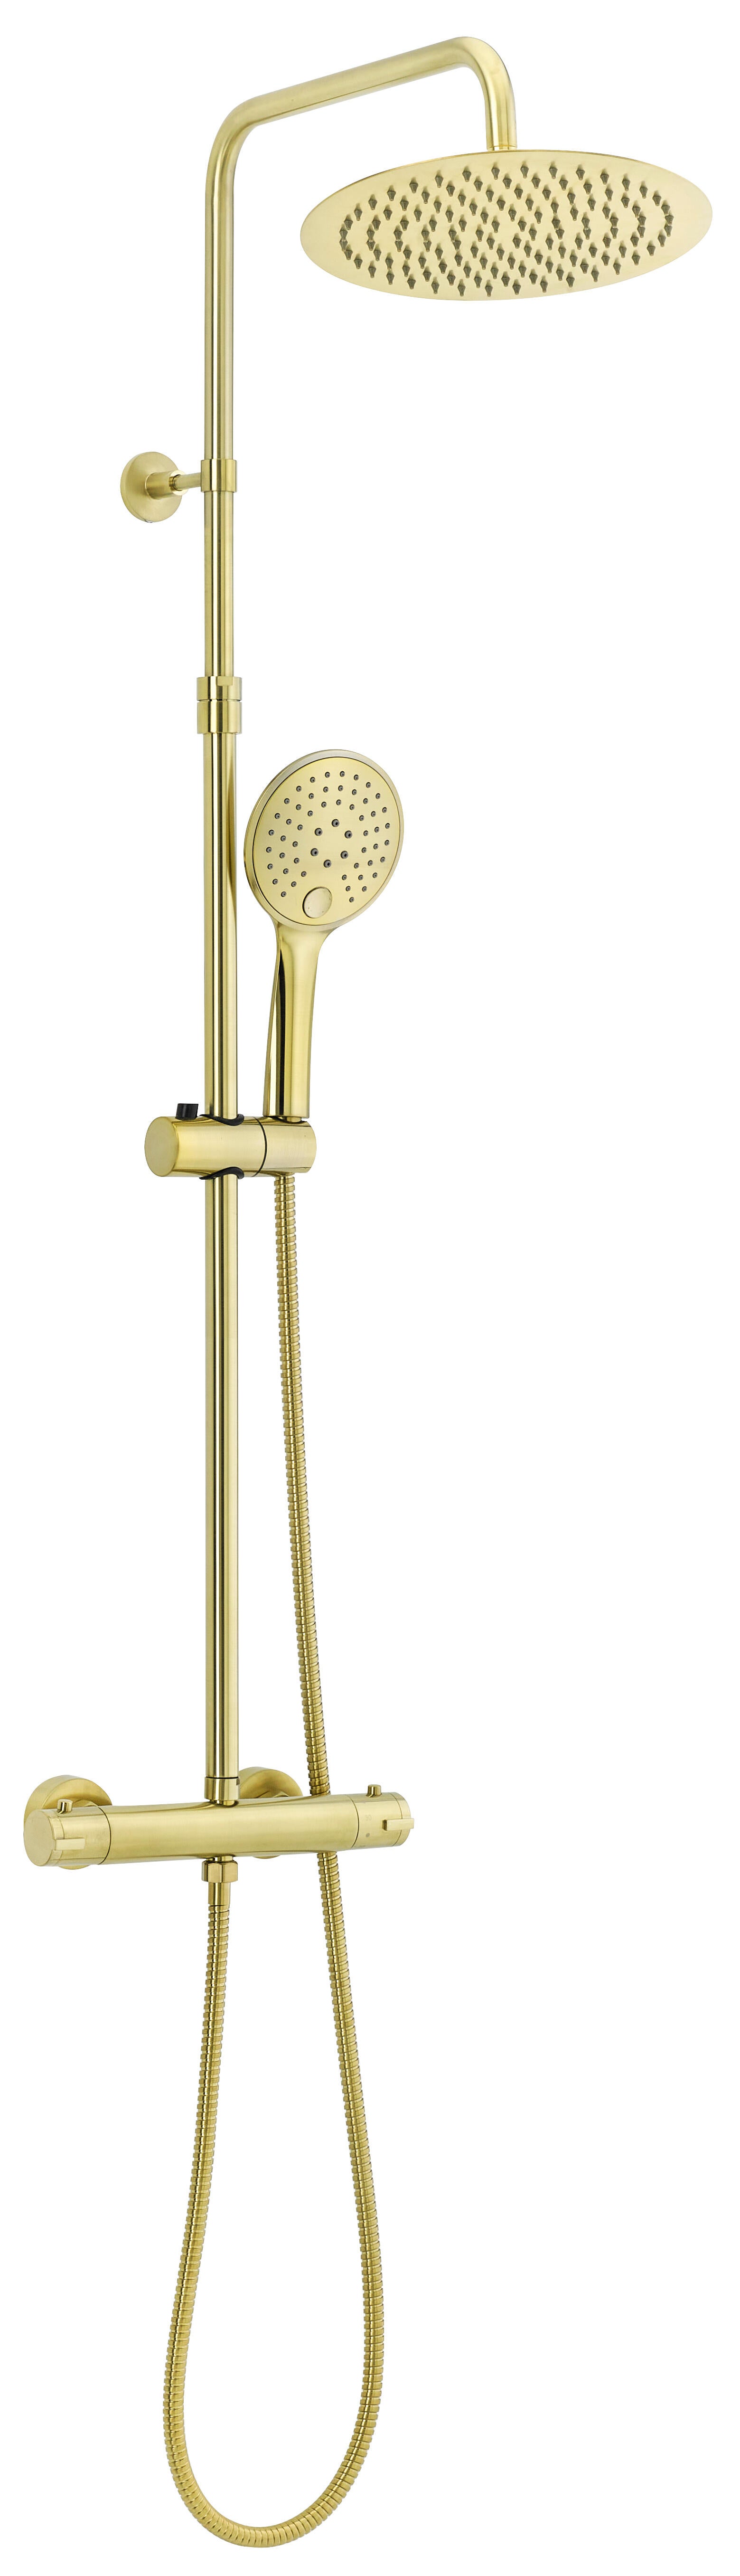 Columna de ducha termostática mtk elegance amarillo/dorado cepillado